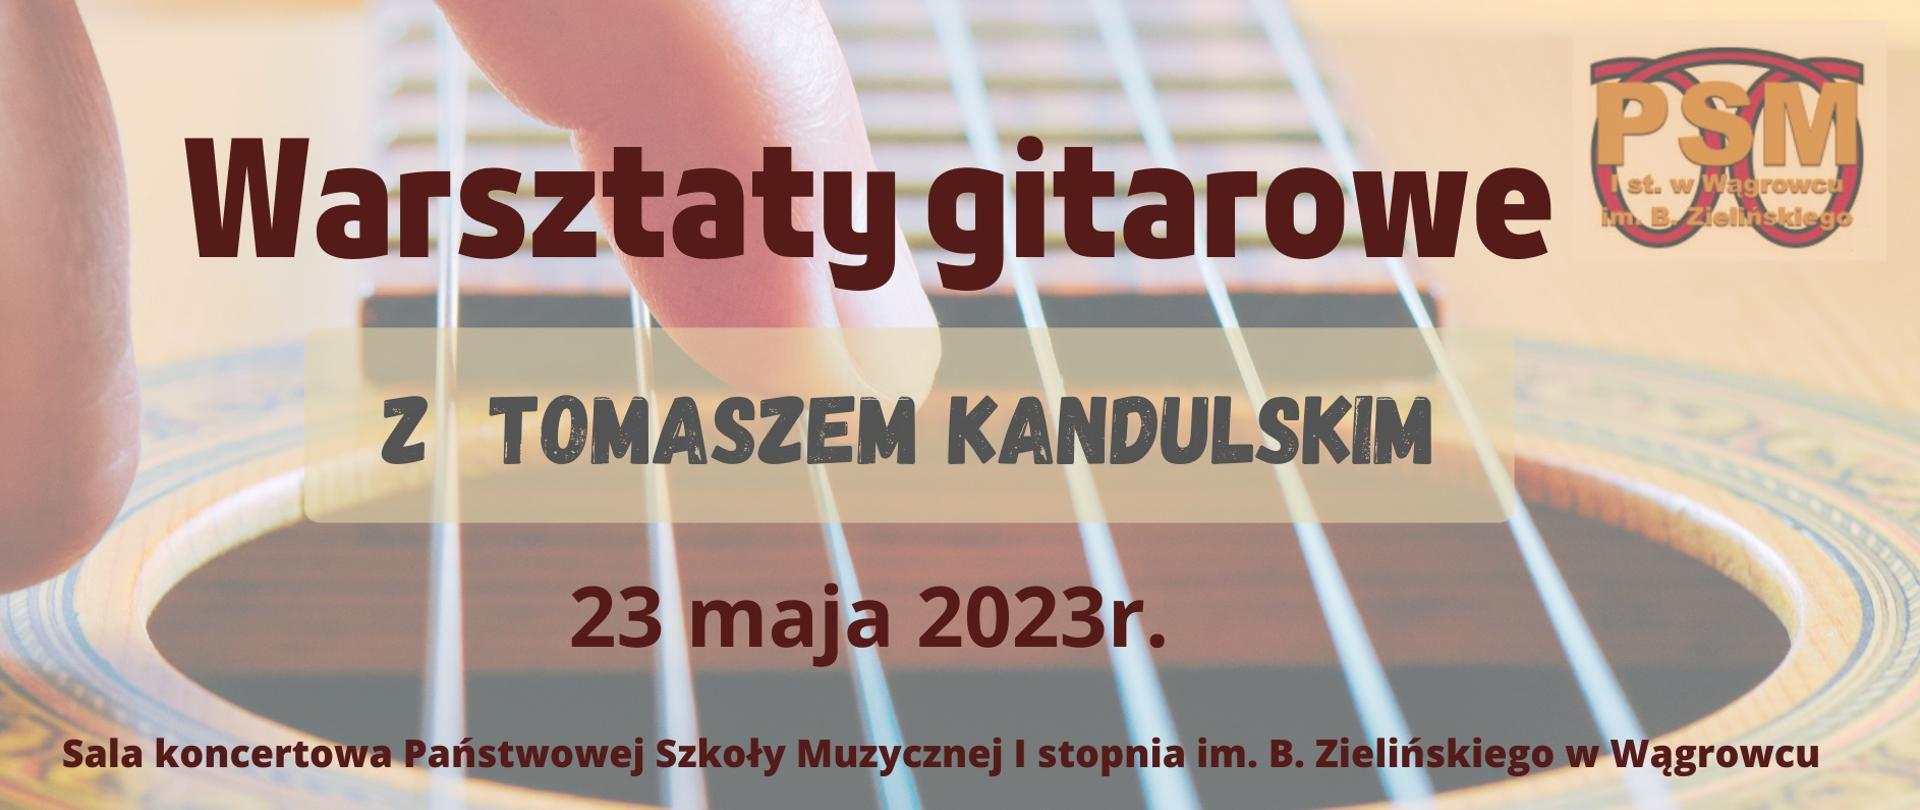 Plakat w kolorystyce żółto-piaskowej z dziećmi w tle informujący o warsztatach gitarowych z Tomaszem Kandulskim w PSM 23 maja 2023r.